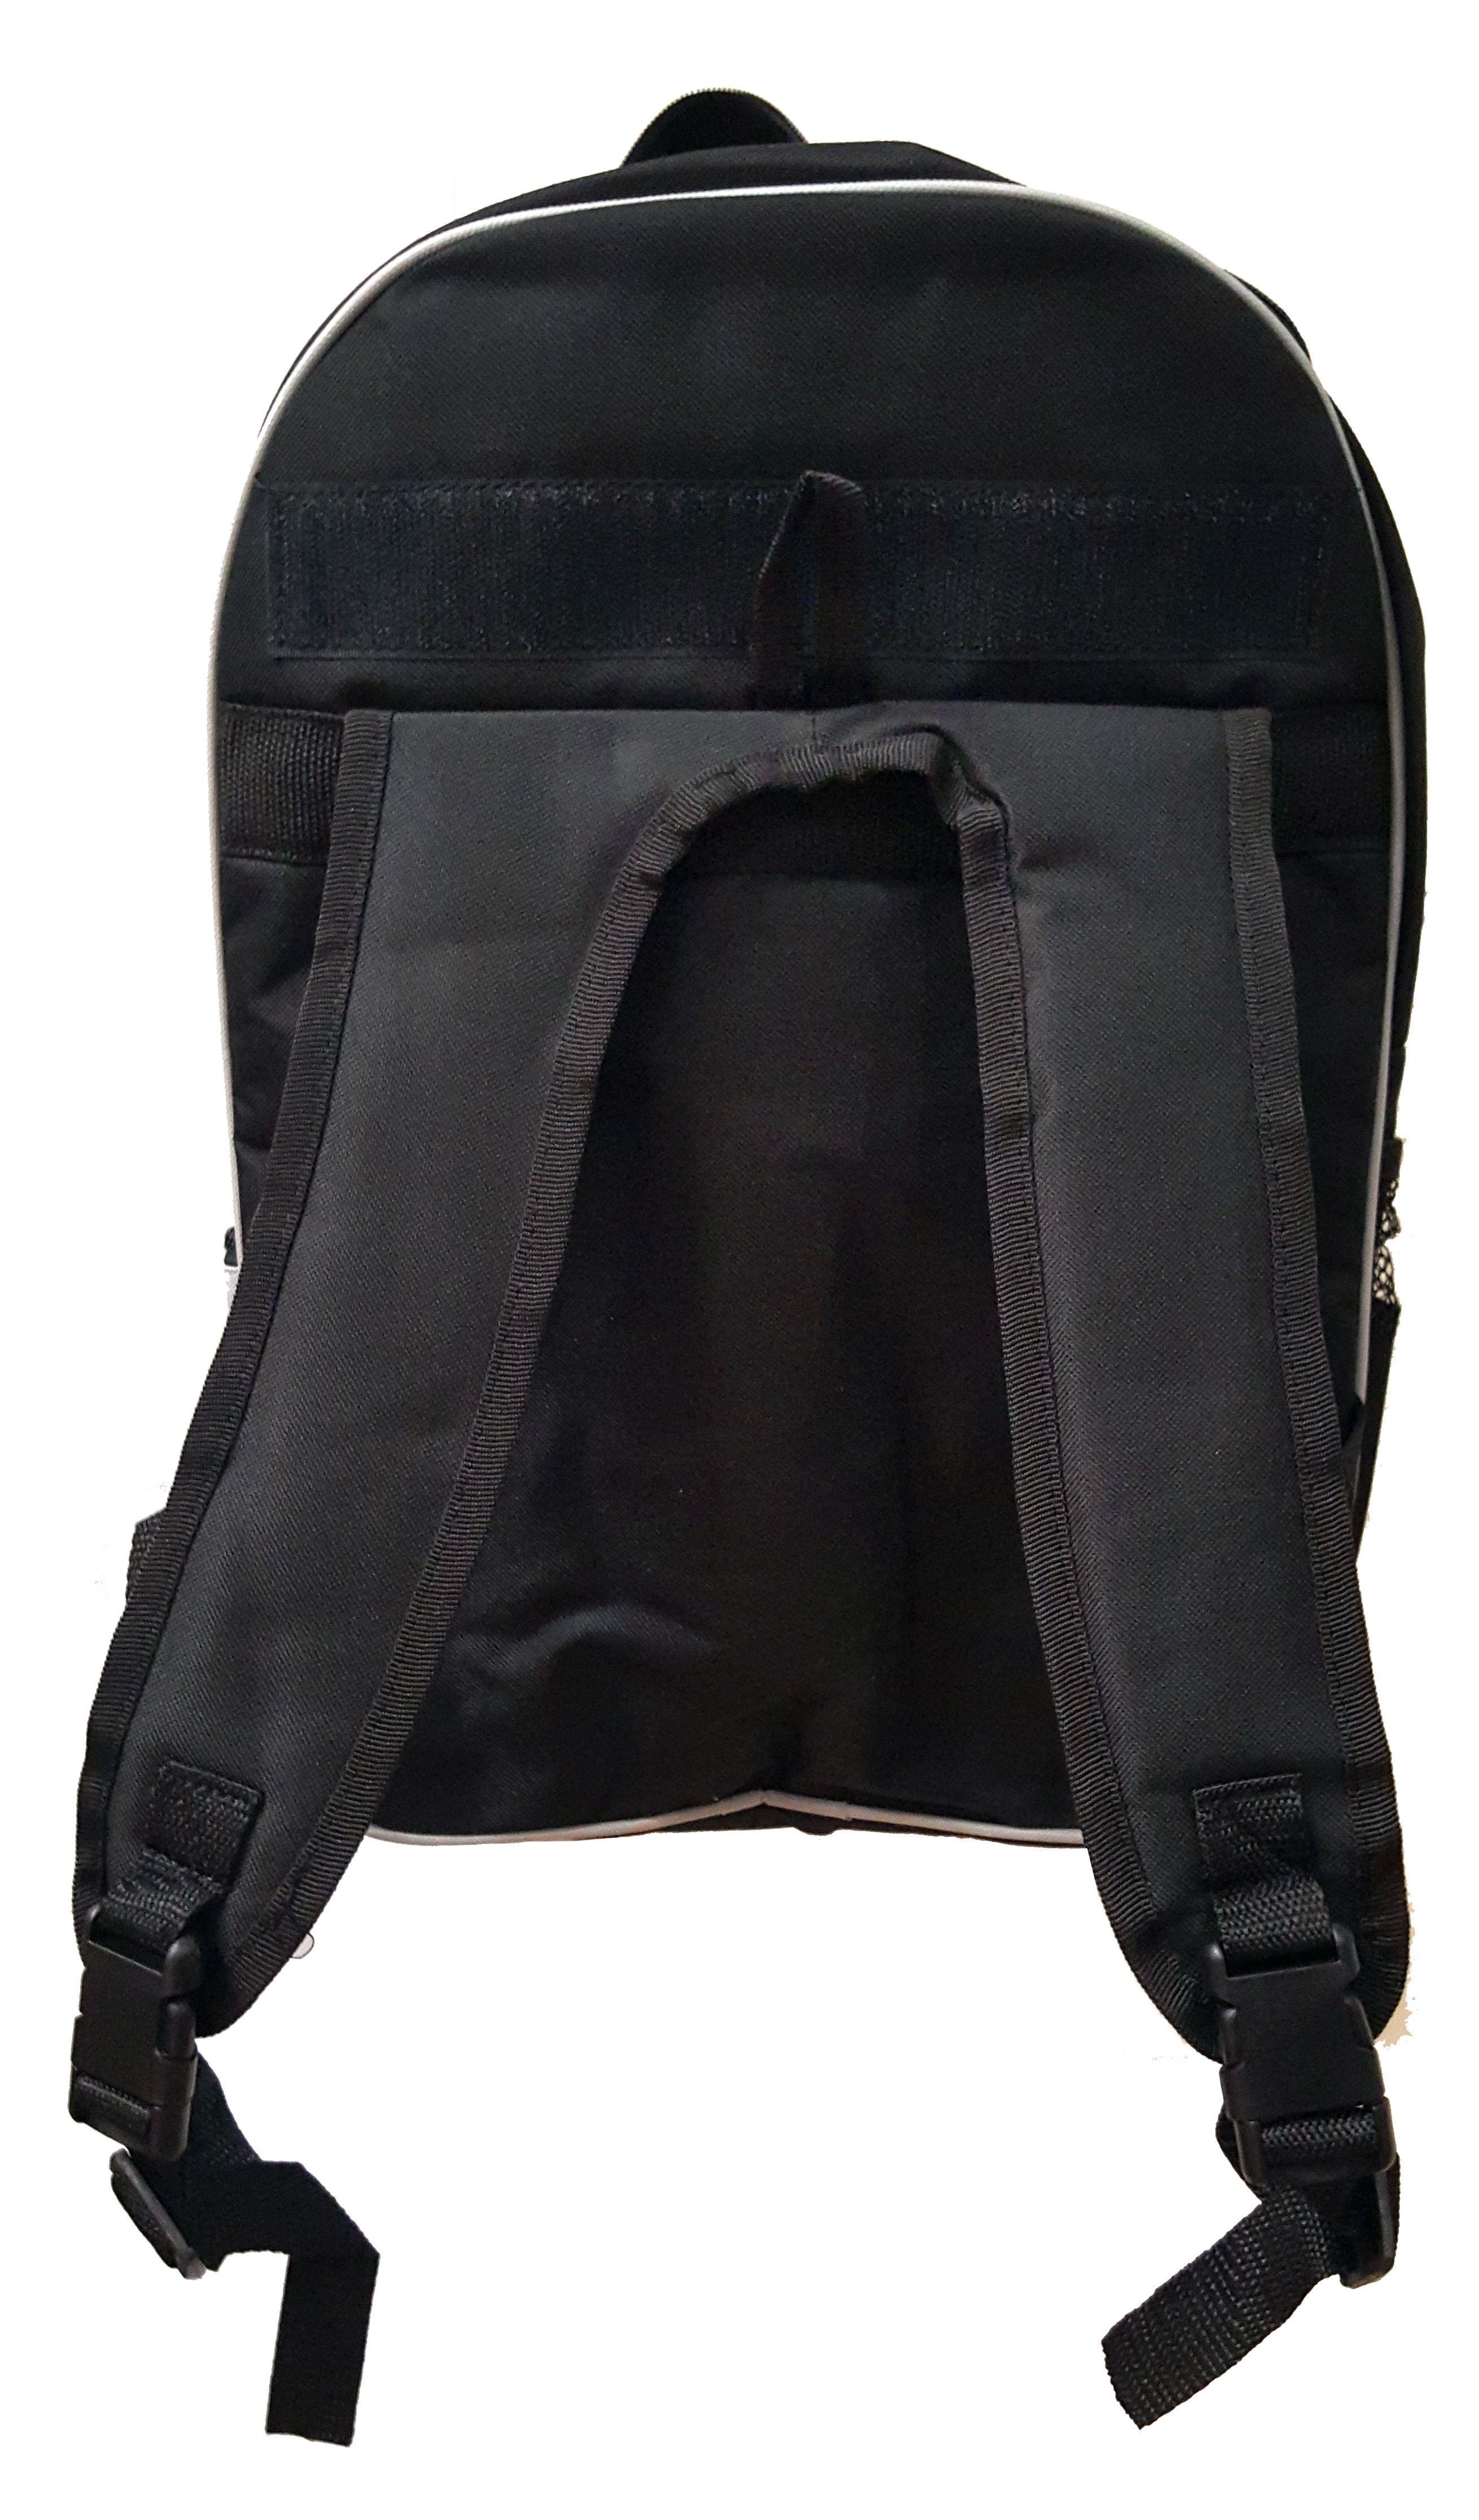 Soccer Balls On Blue Black School Backpack & Pencil Bag Set - image 5 of 5